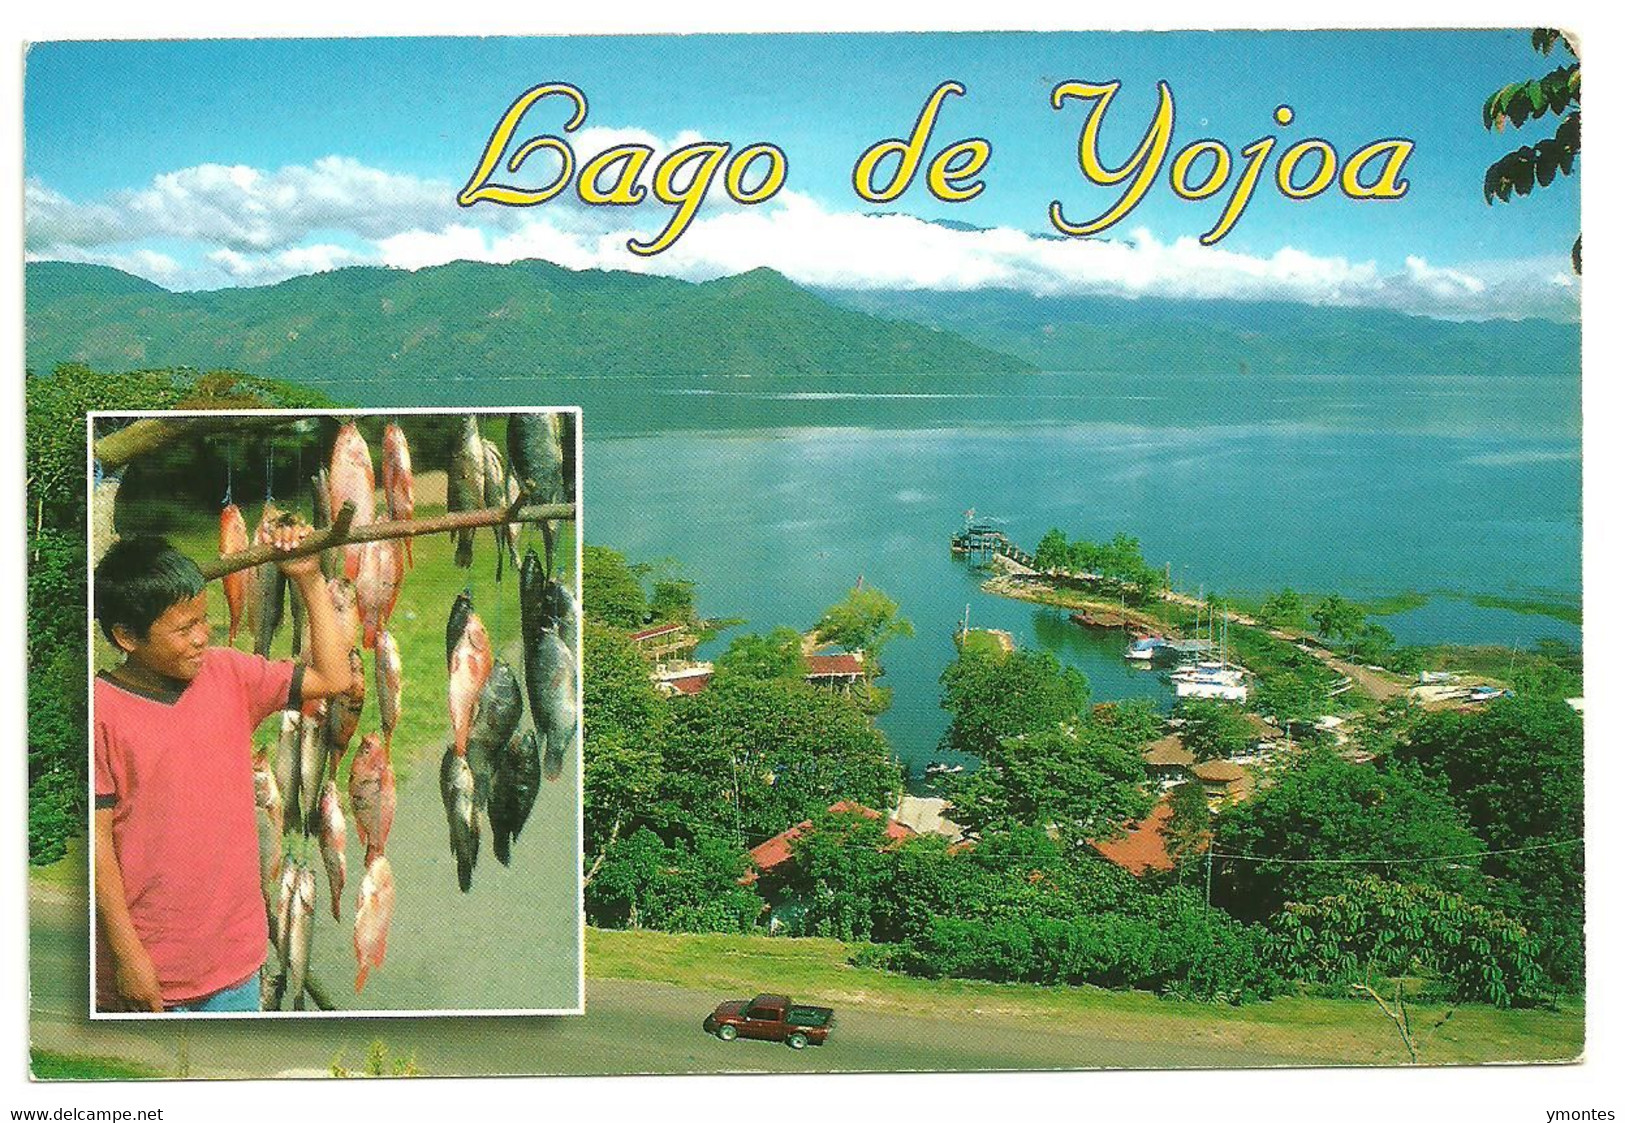 Circulated Santa Ana, Francisco Morazan To Tegucigalpa 2011( Maria Auxiliadora Stamps) - Honduras